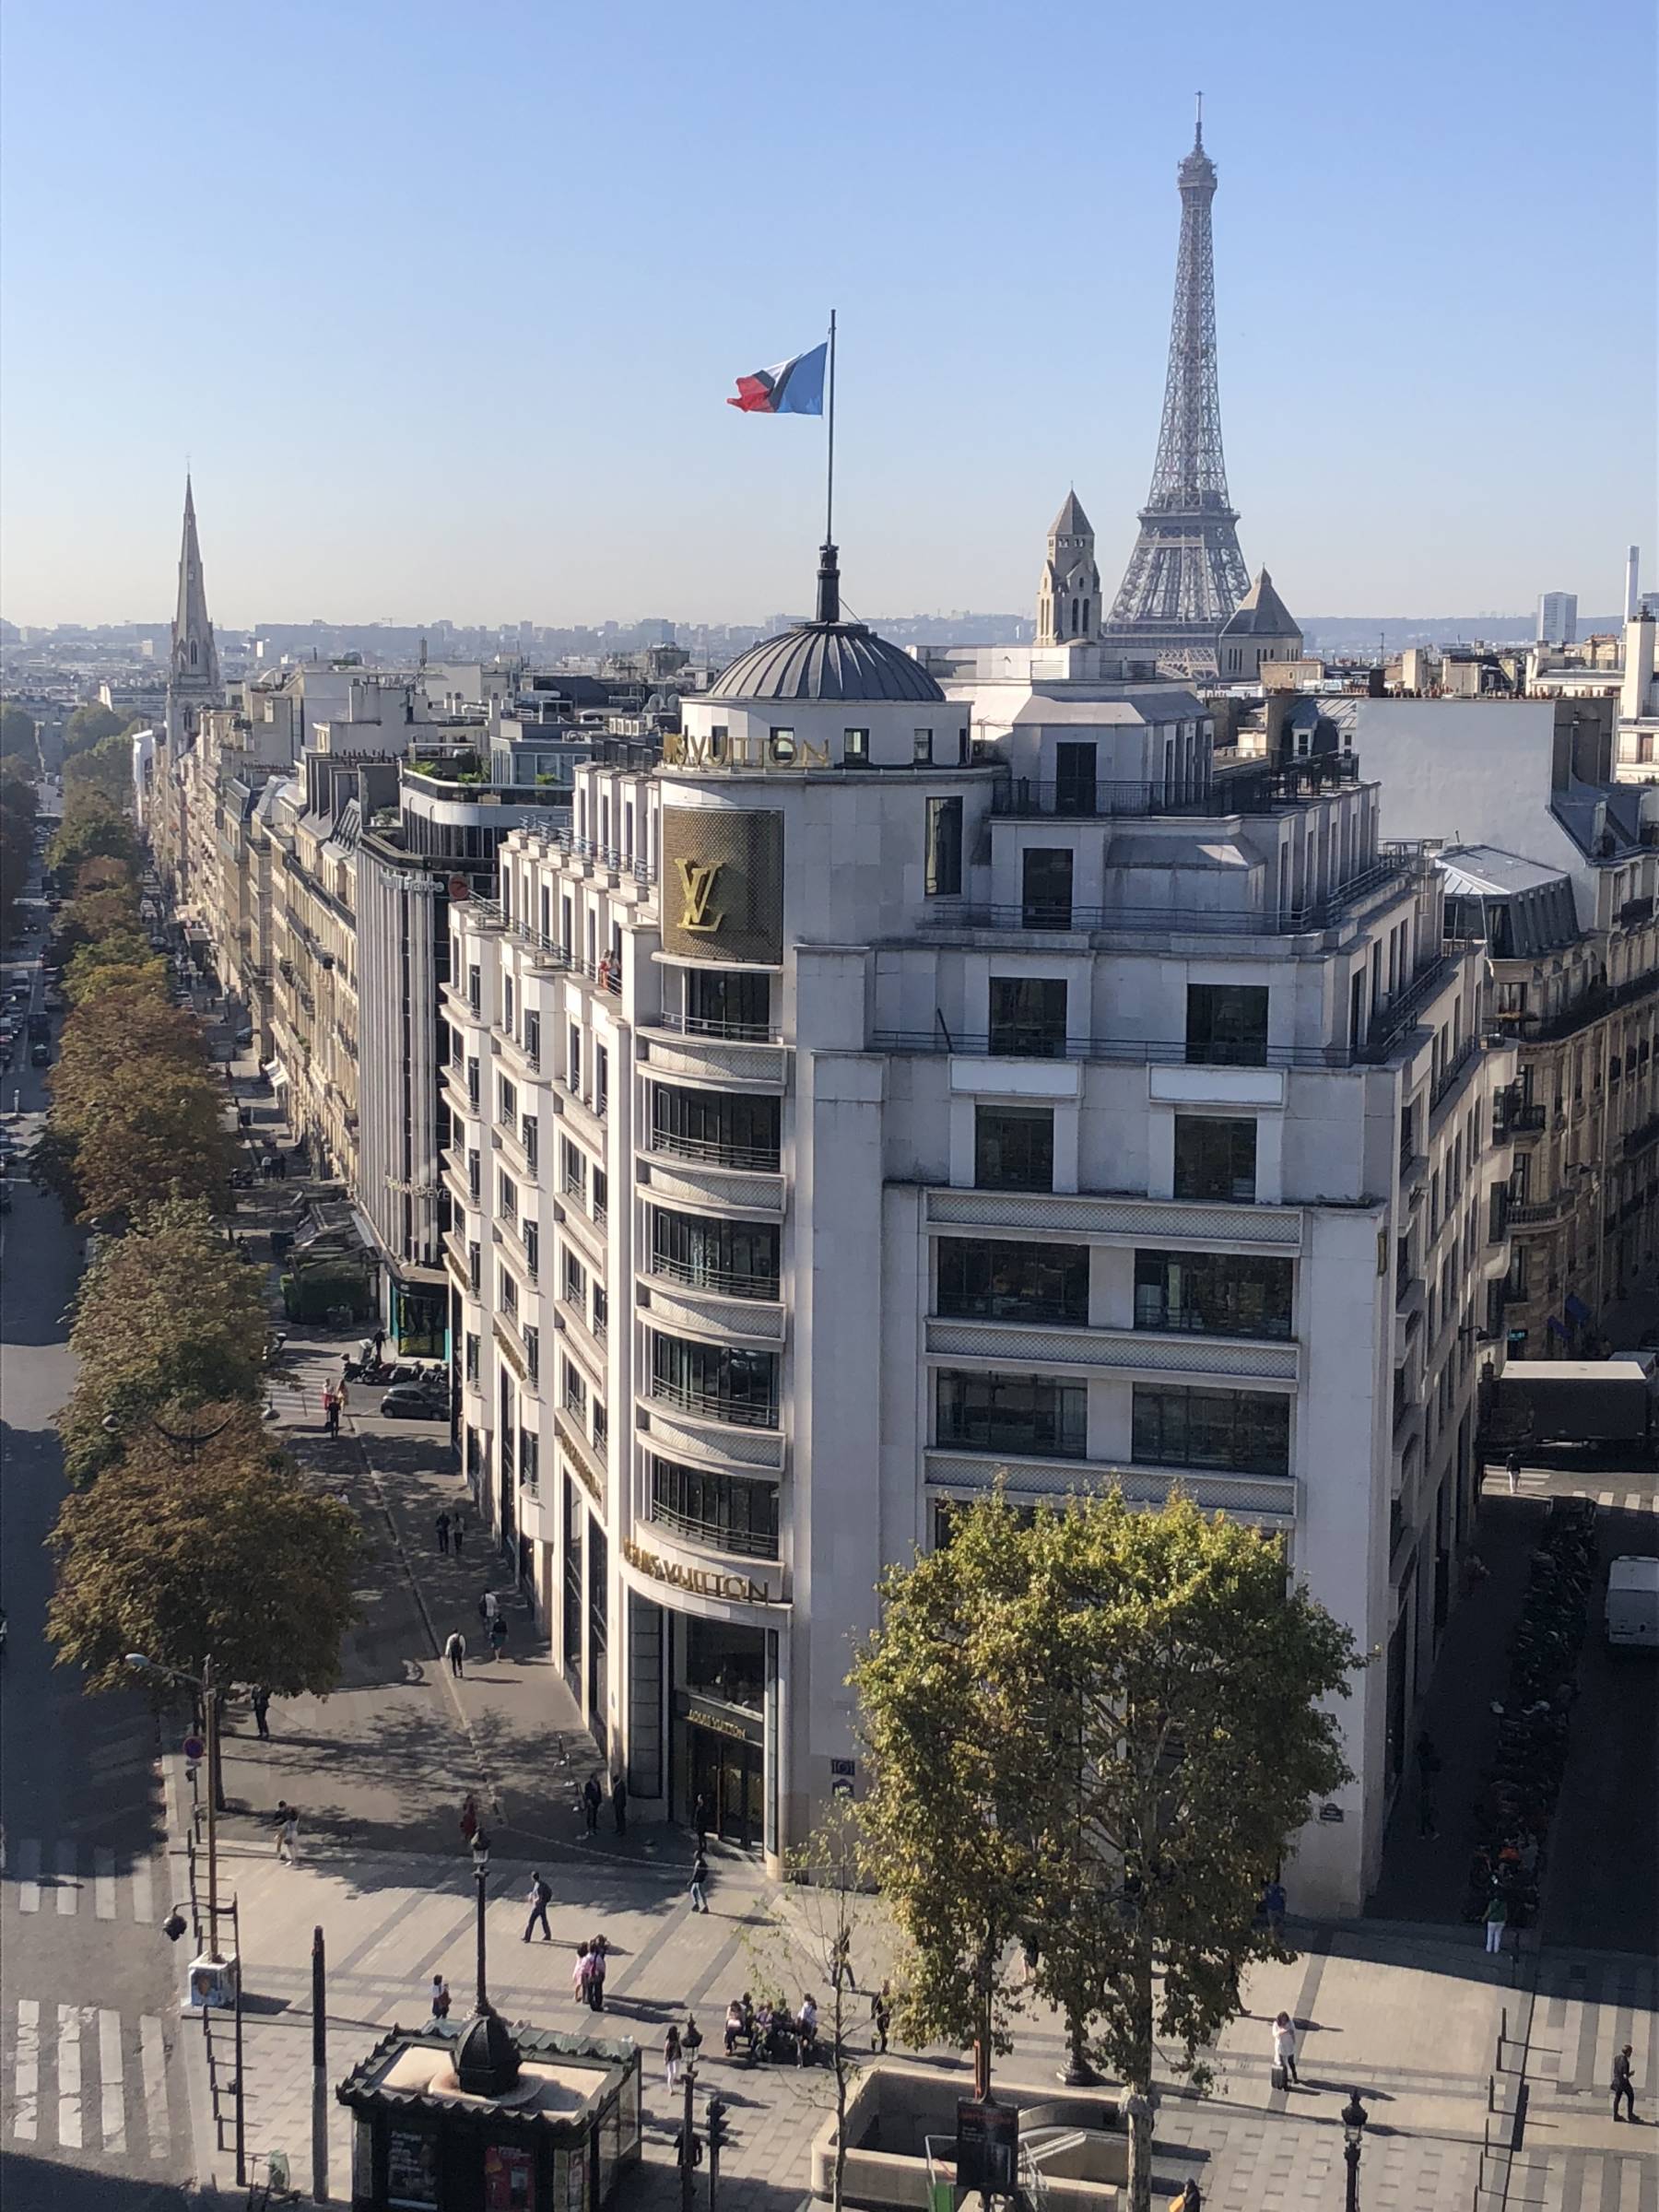 Global Store Louis Vuitton Champs Elysées — Barthélémy Griño